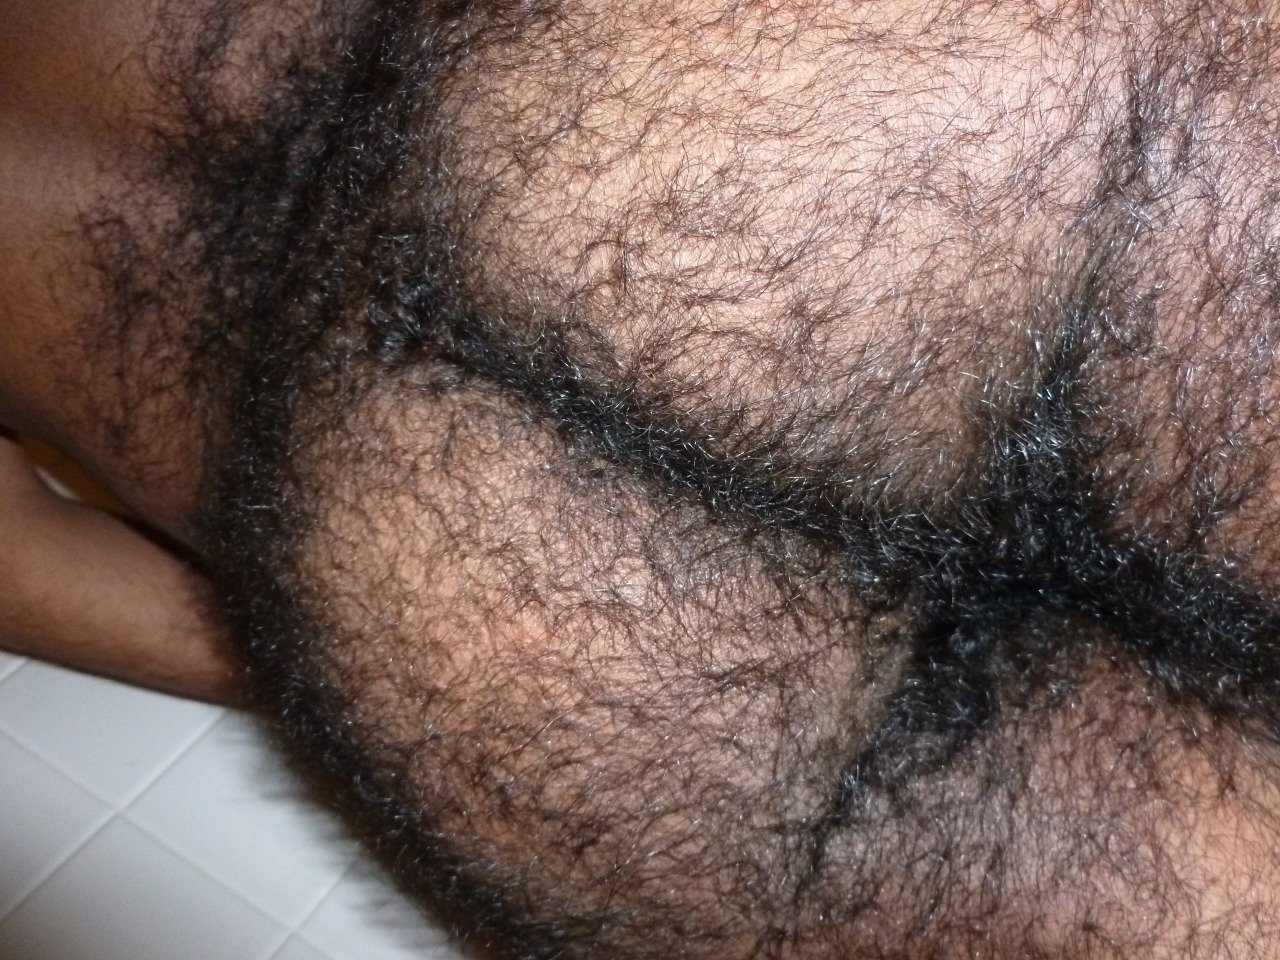 мужские волосатые жопы порно фото фото 4